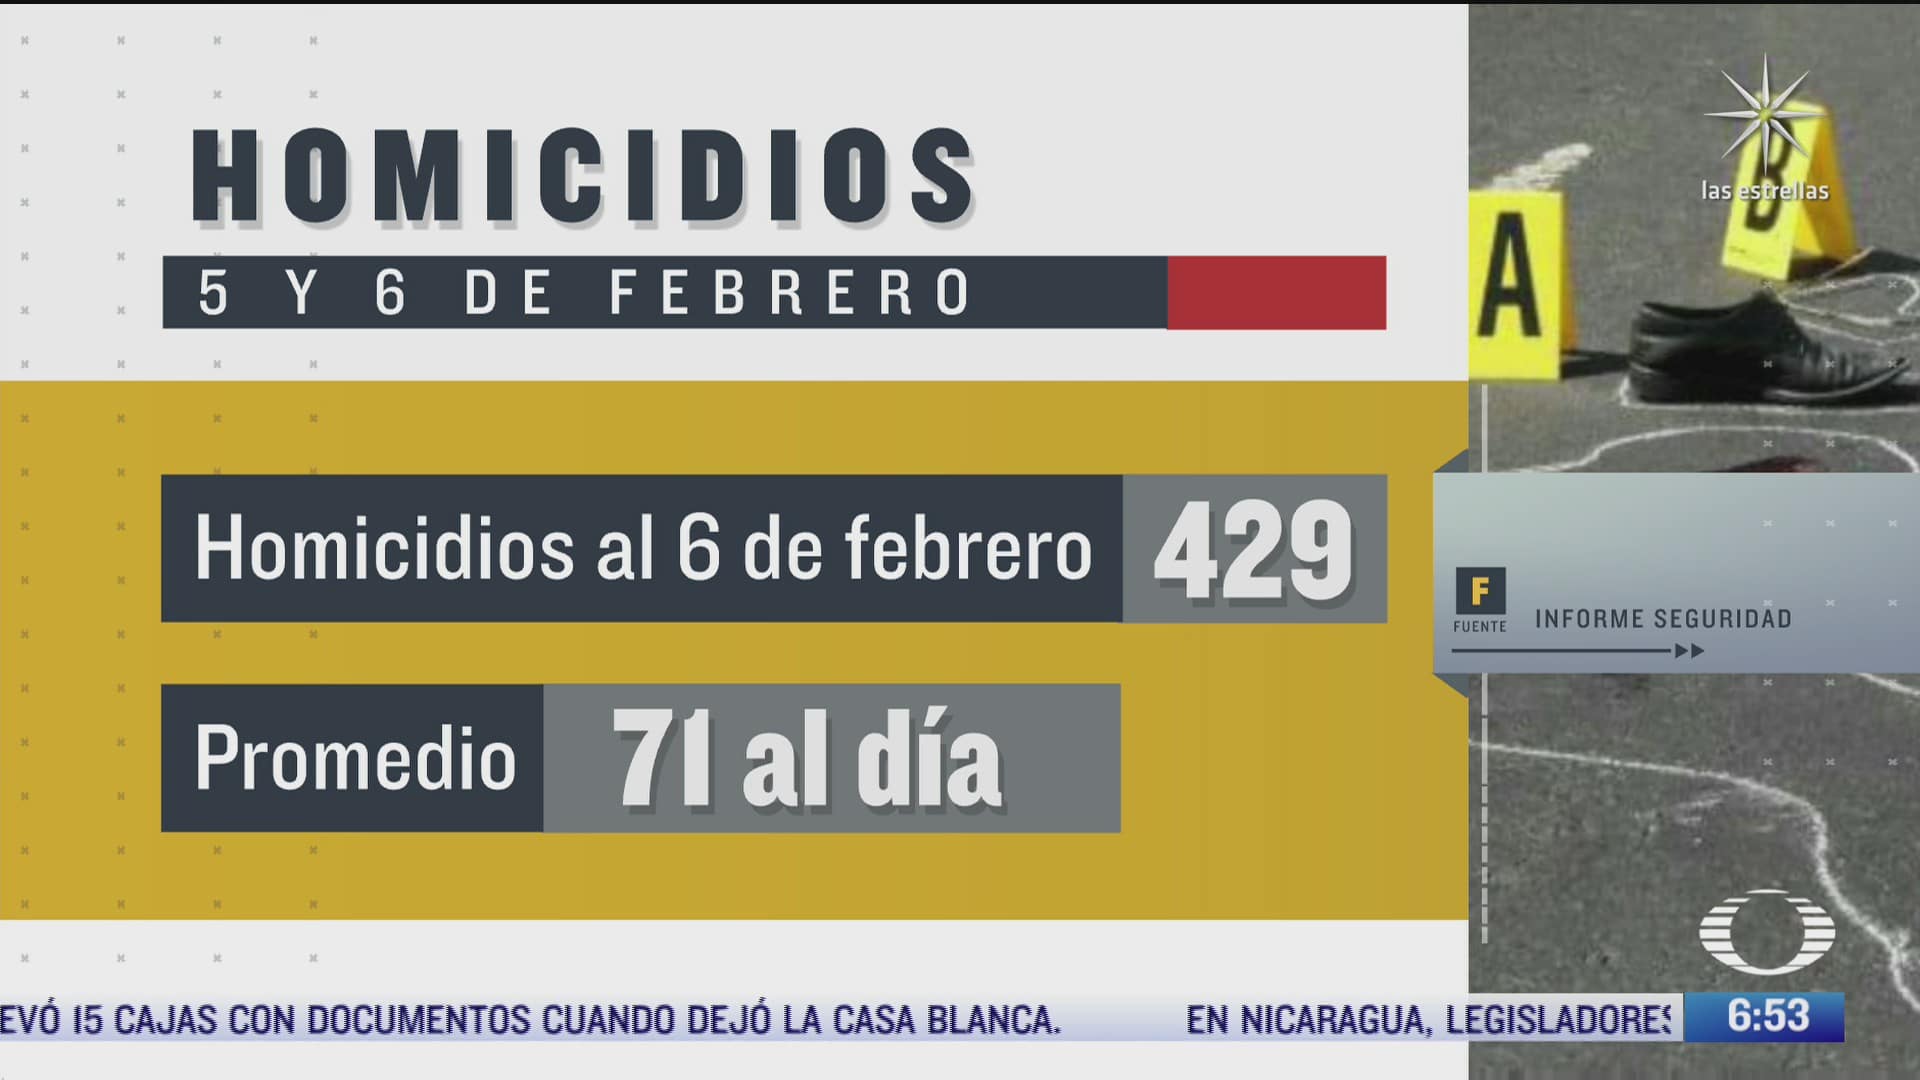 159 homicidios durante el primer fin de semana de febrero de 2022 en mexico